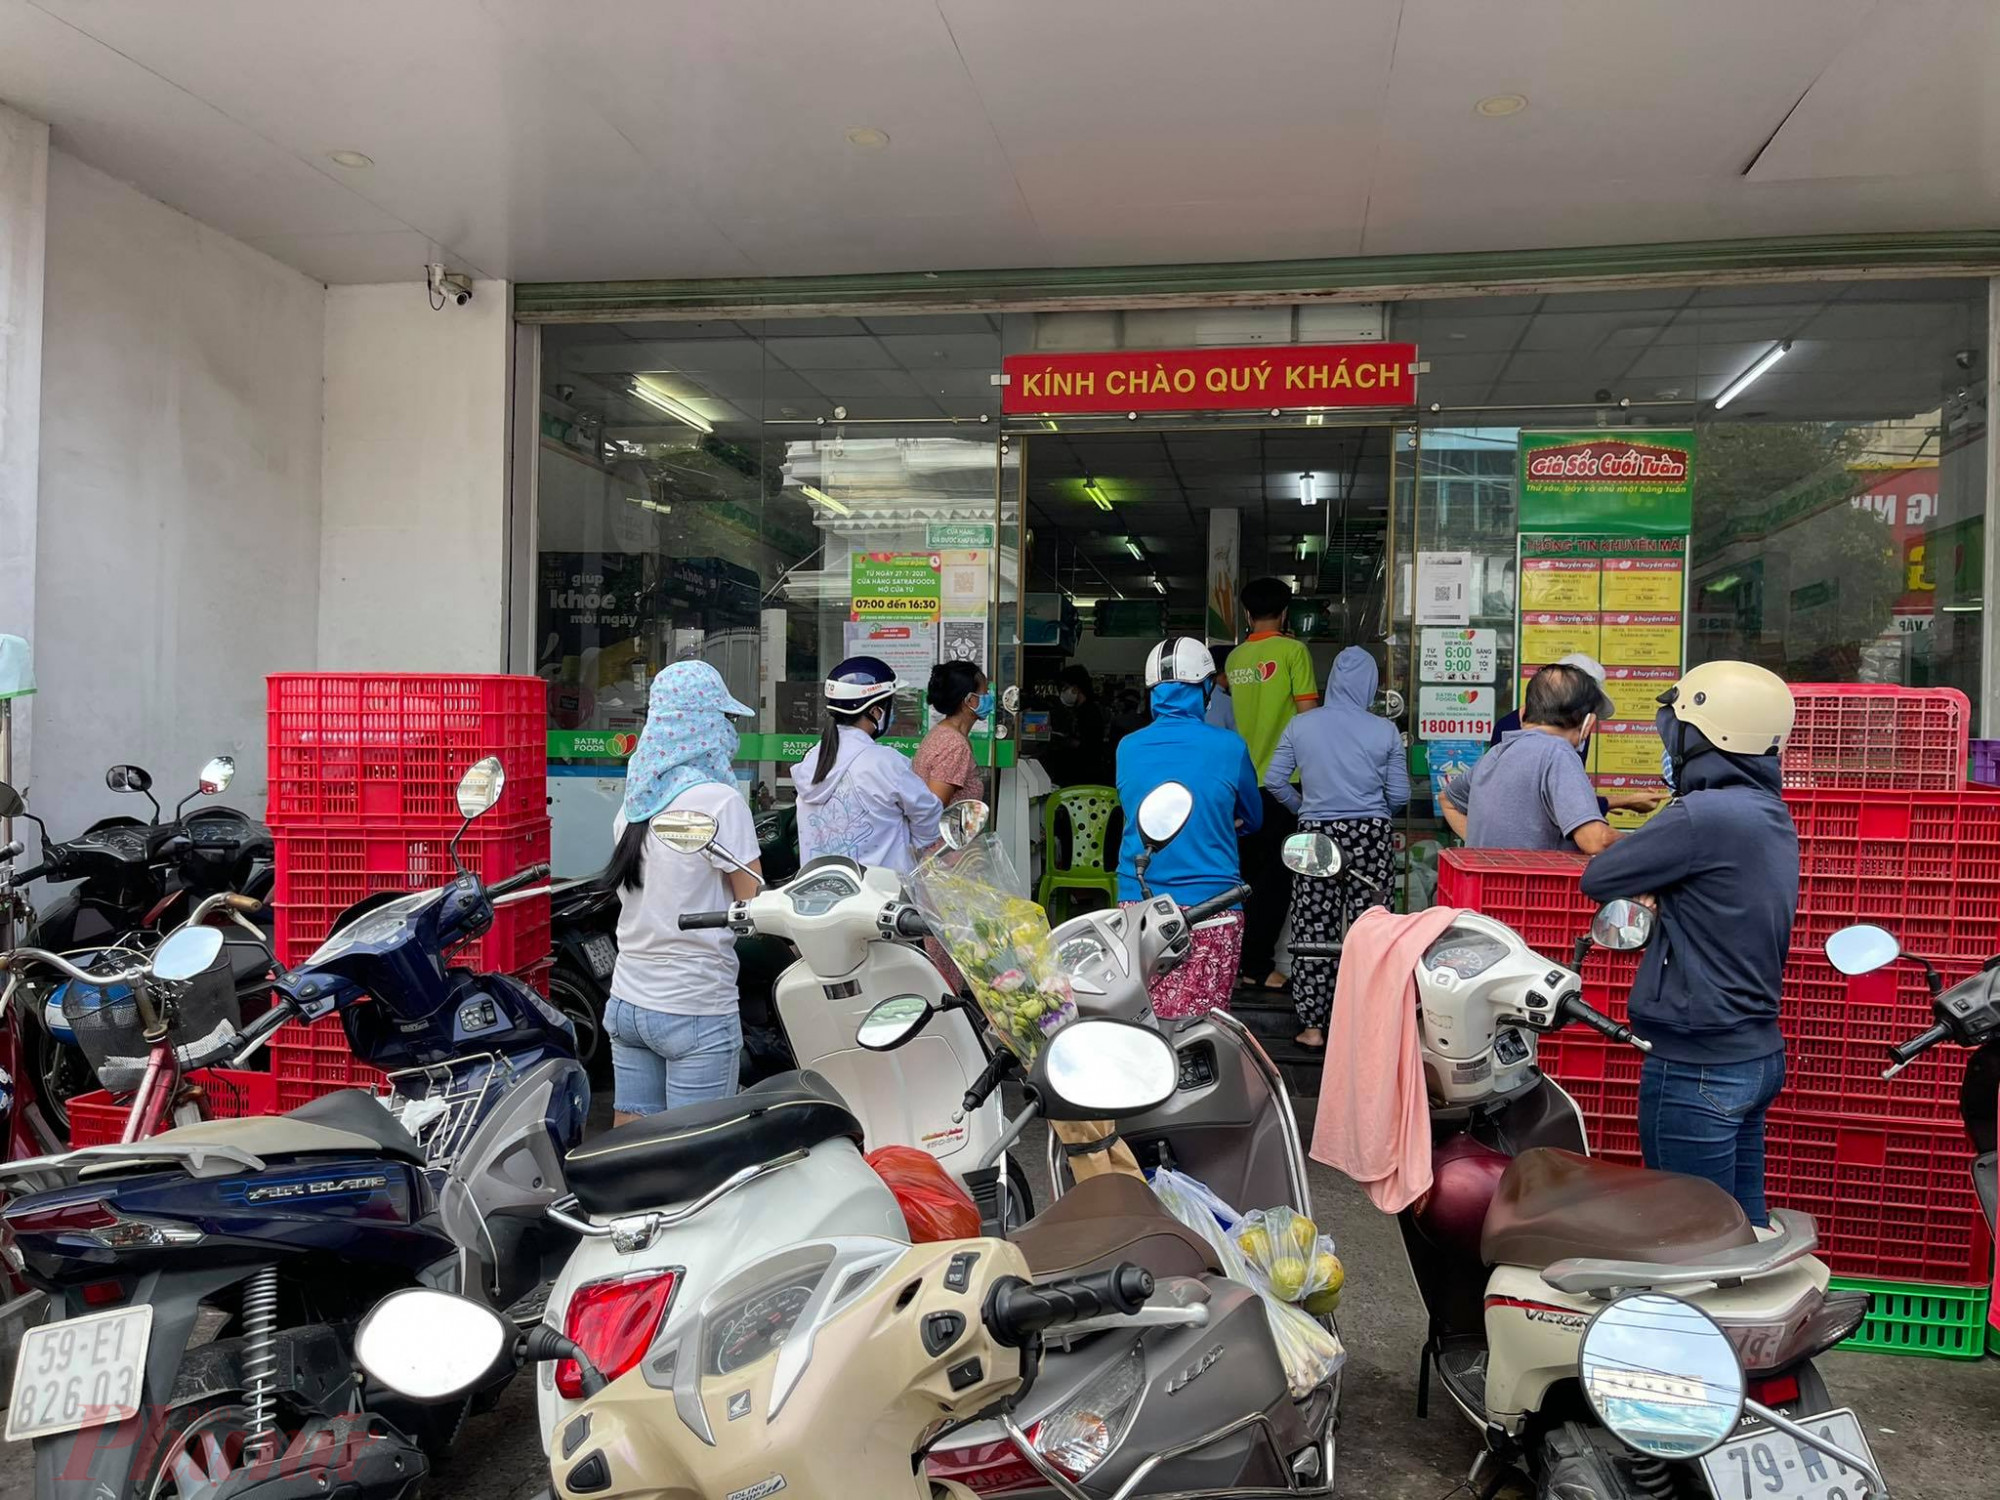 Khách xếp hàng tại cửa hàng SatraFoods Lê Đức Thọ, quận Gò Vấp. Bên trong đang có nhiều khách mua hàng, chờ tính tiền. Bảo vệ chỉ cho một khách vào khi có một khách ra.